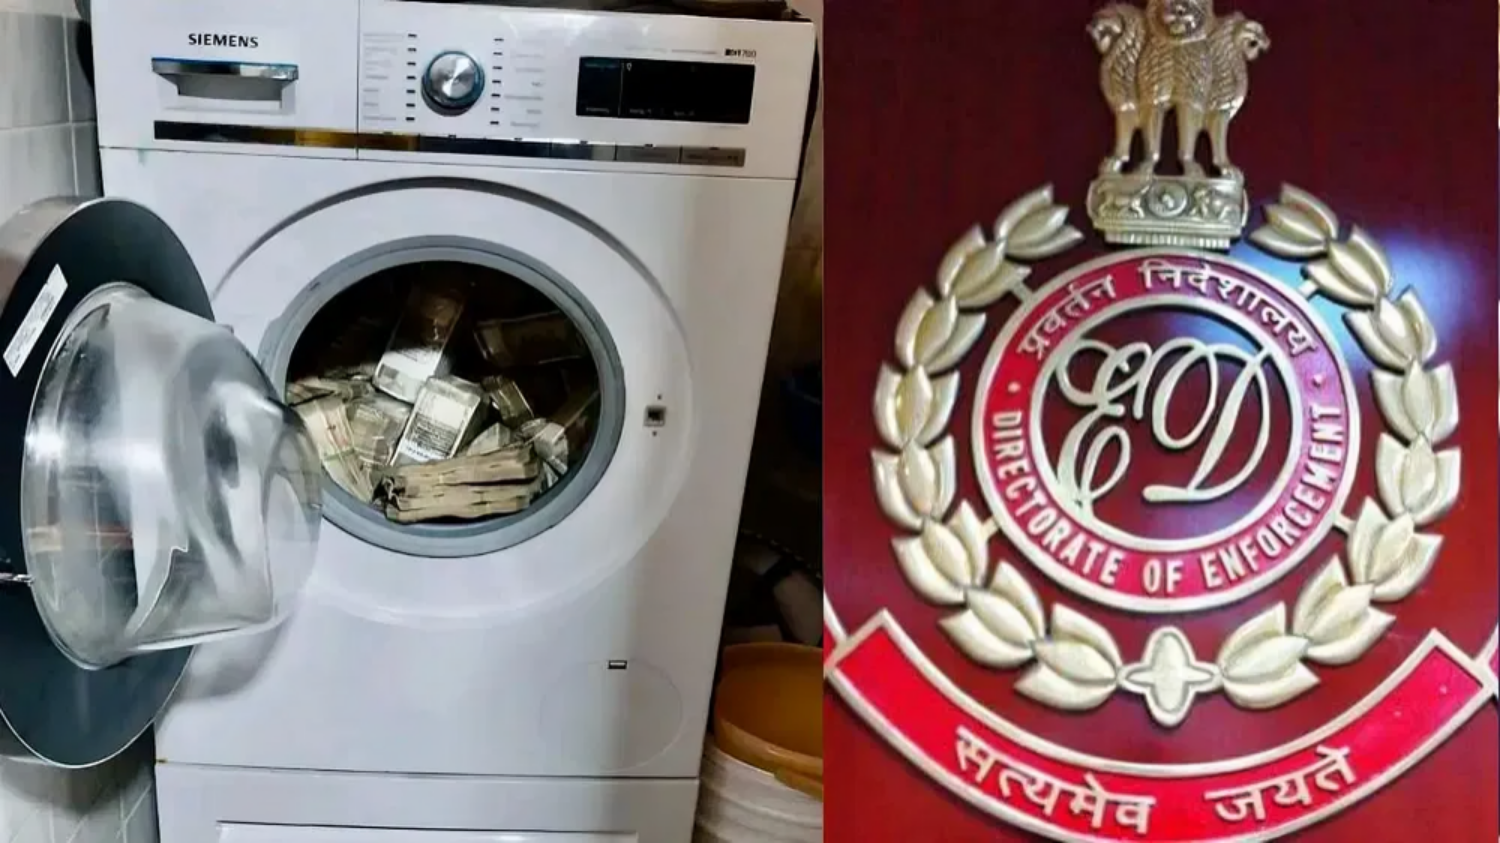 No locker, no wall, 'treasure' found in washing machine... ED raid nets Rs 2.54 crore की तस्वीर